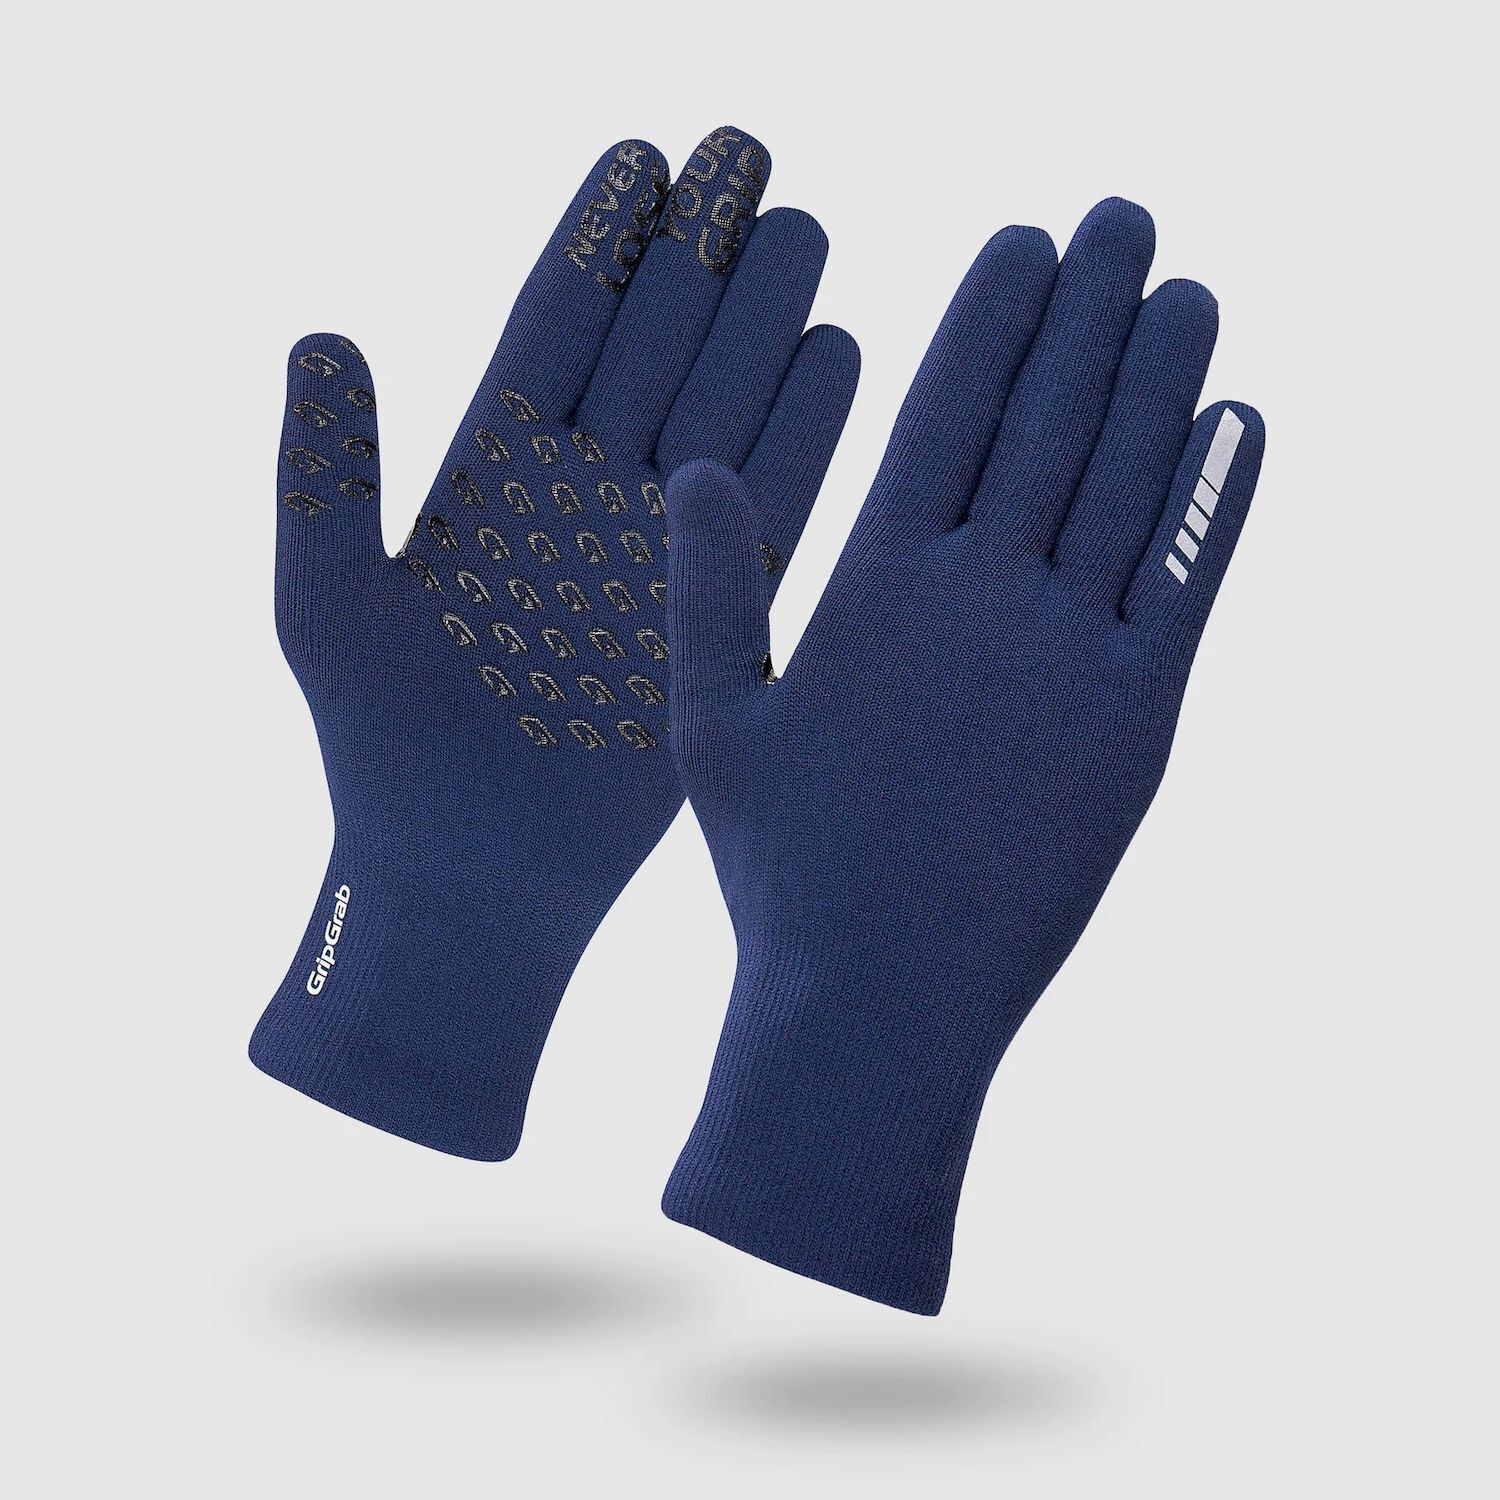 Grip Grab Waterproof Knitted Thermal Glove - Fahrradhandschuhe